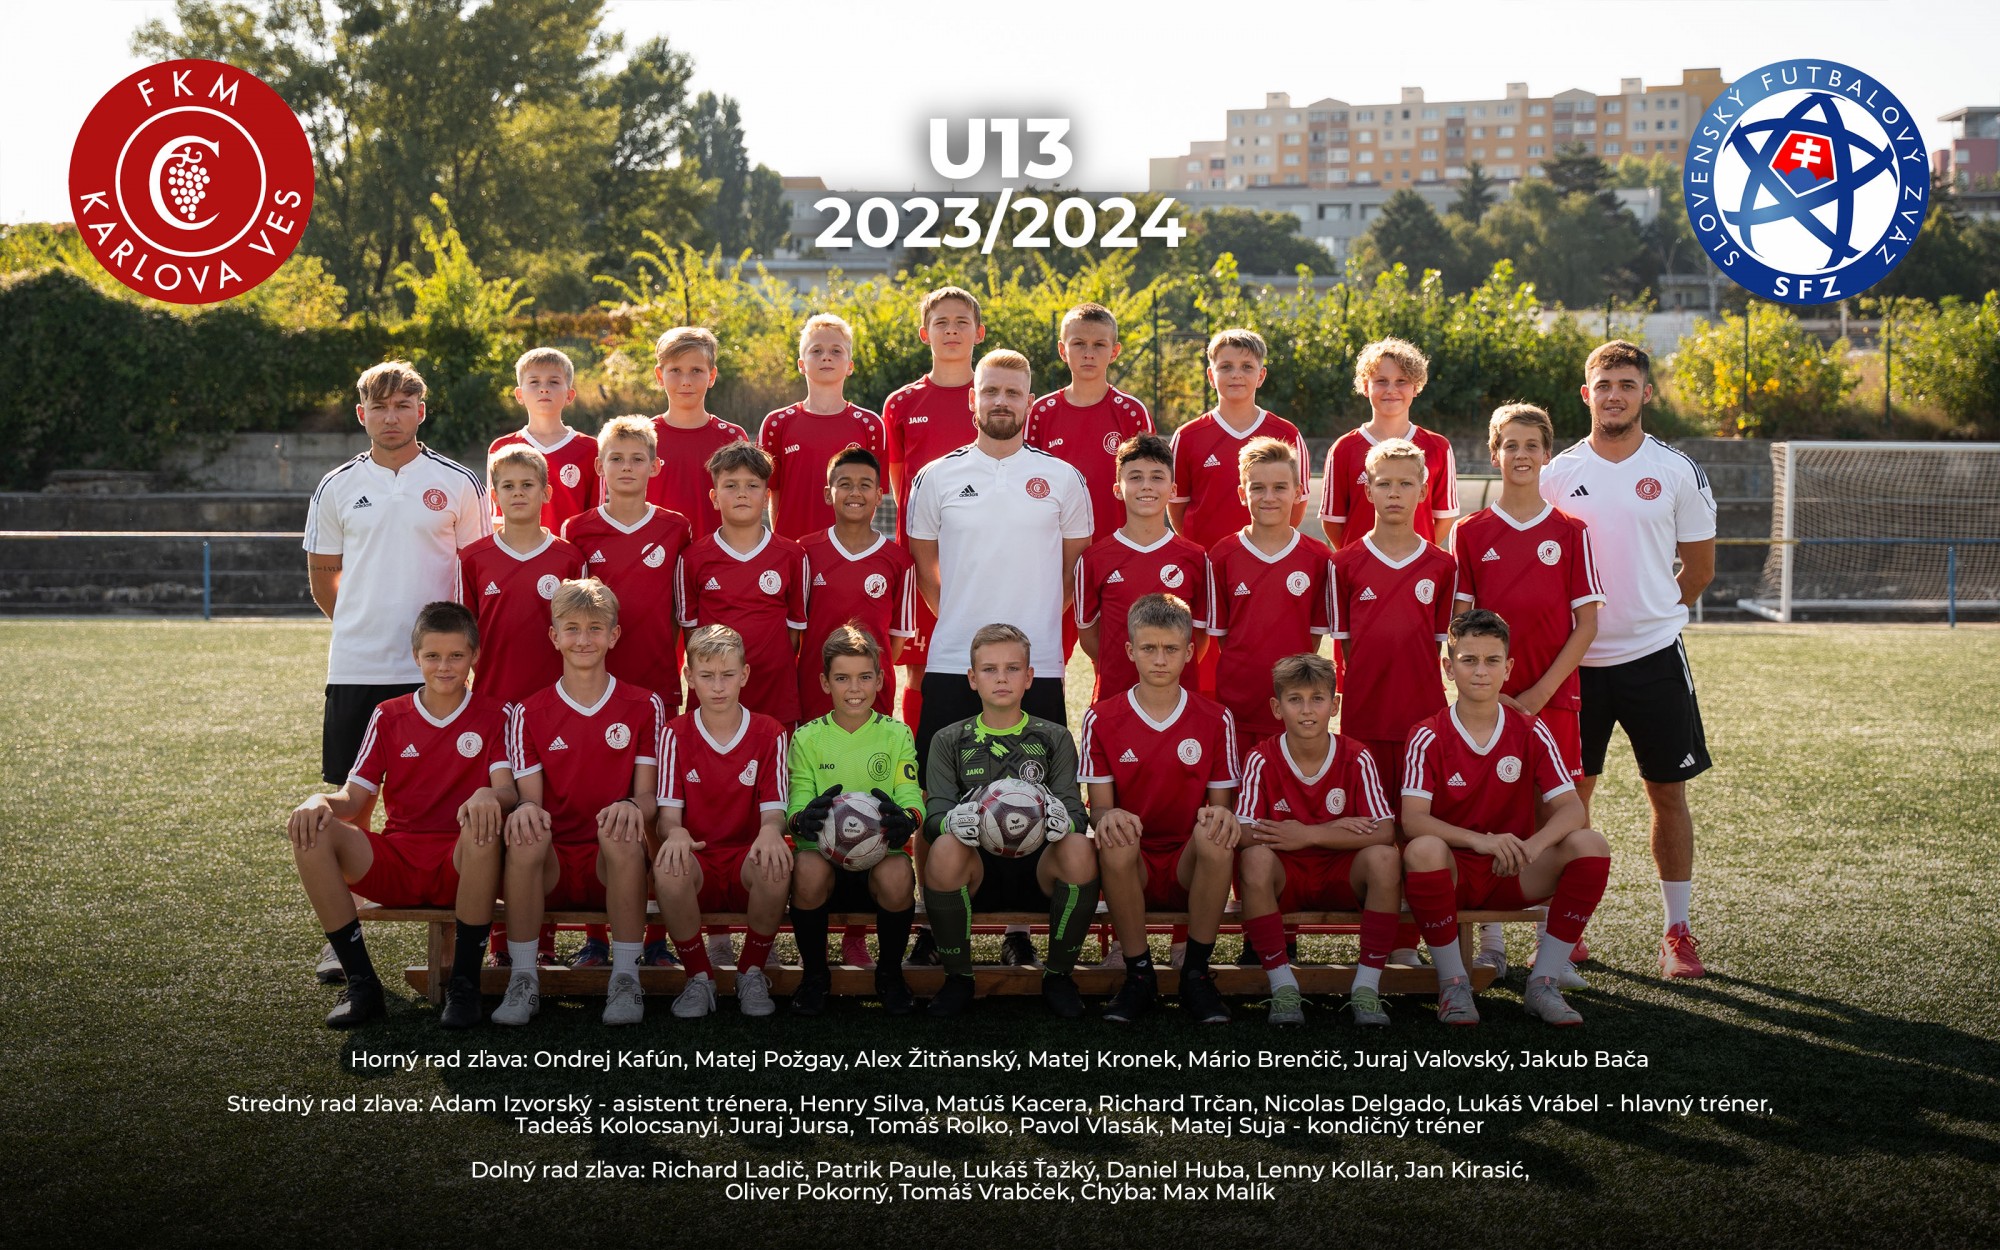 Mladší žiaci U13 (2011) súťažný ročník 2021/2022